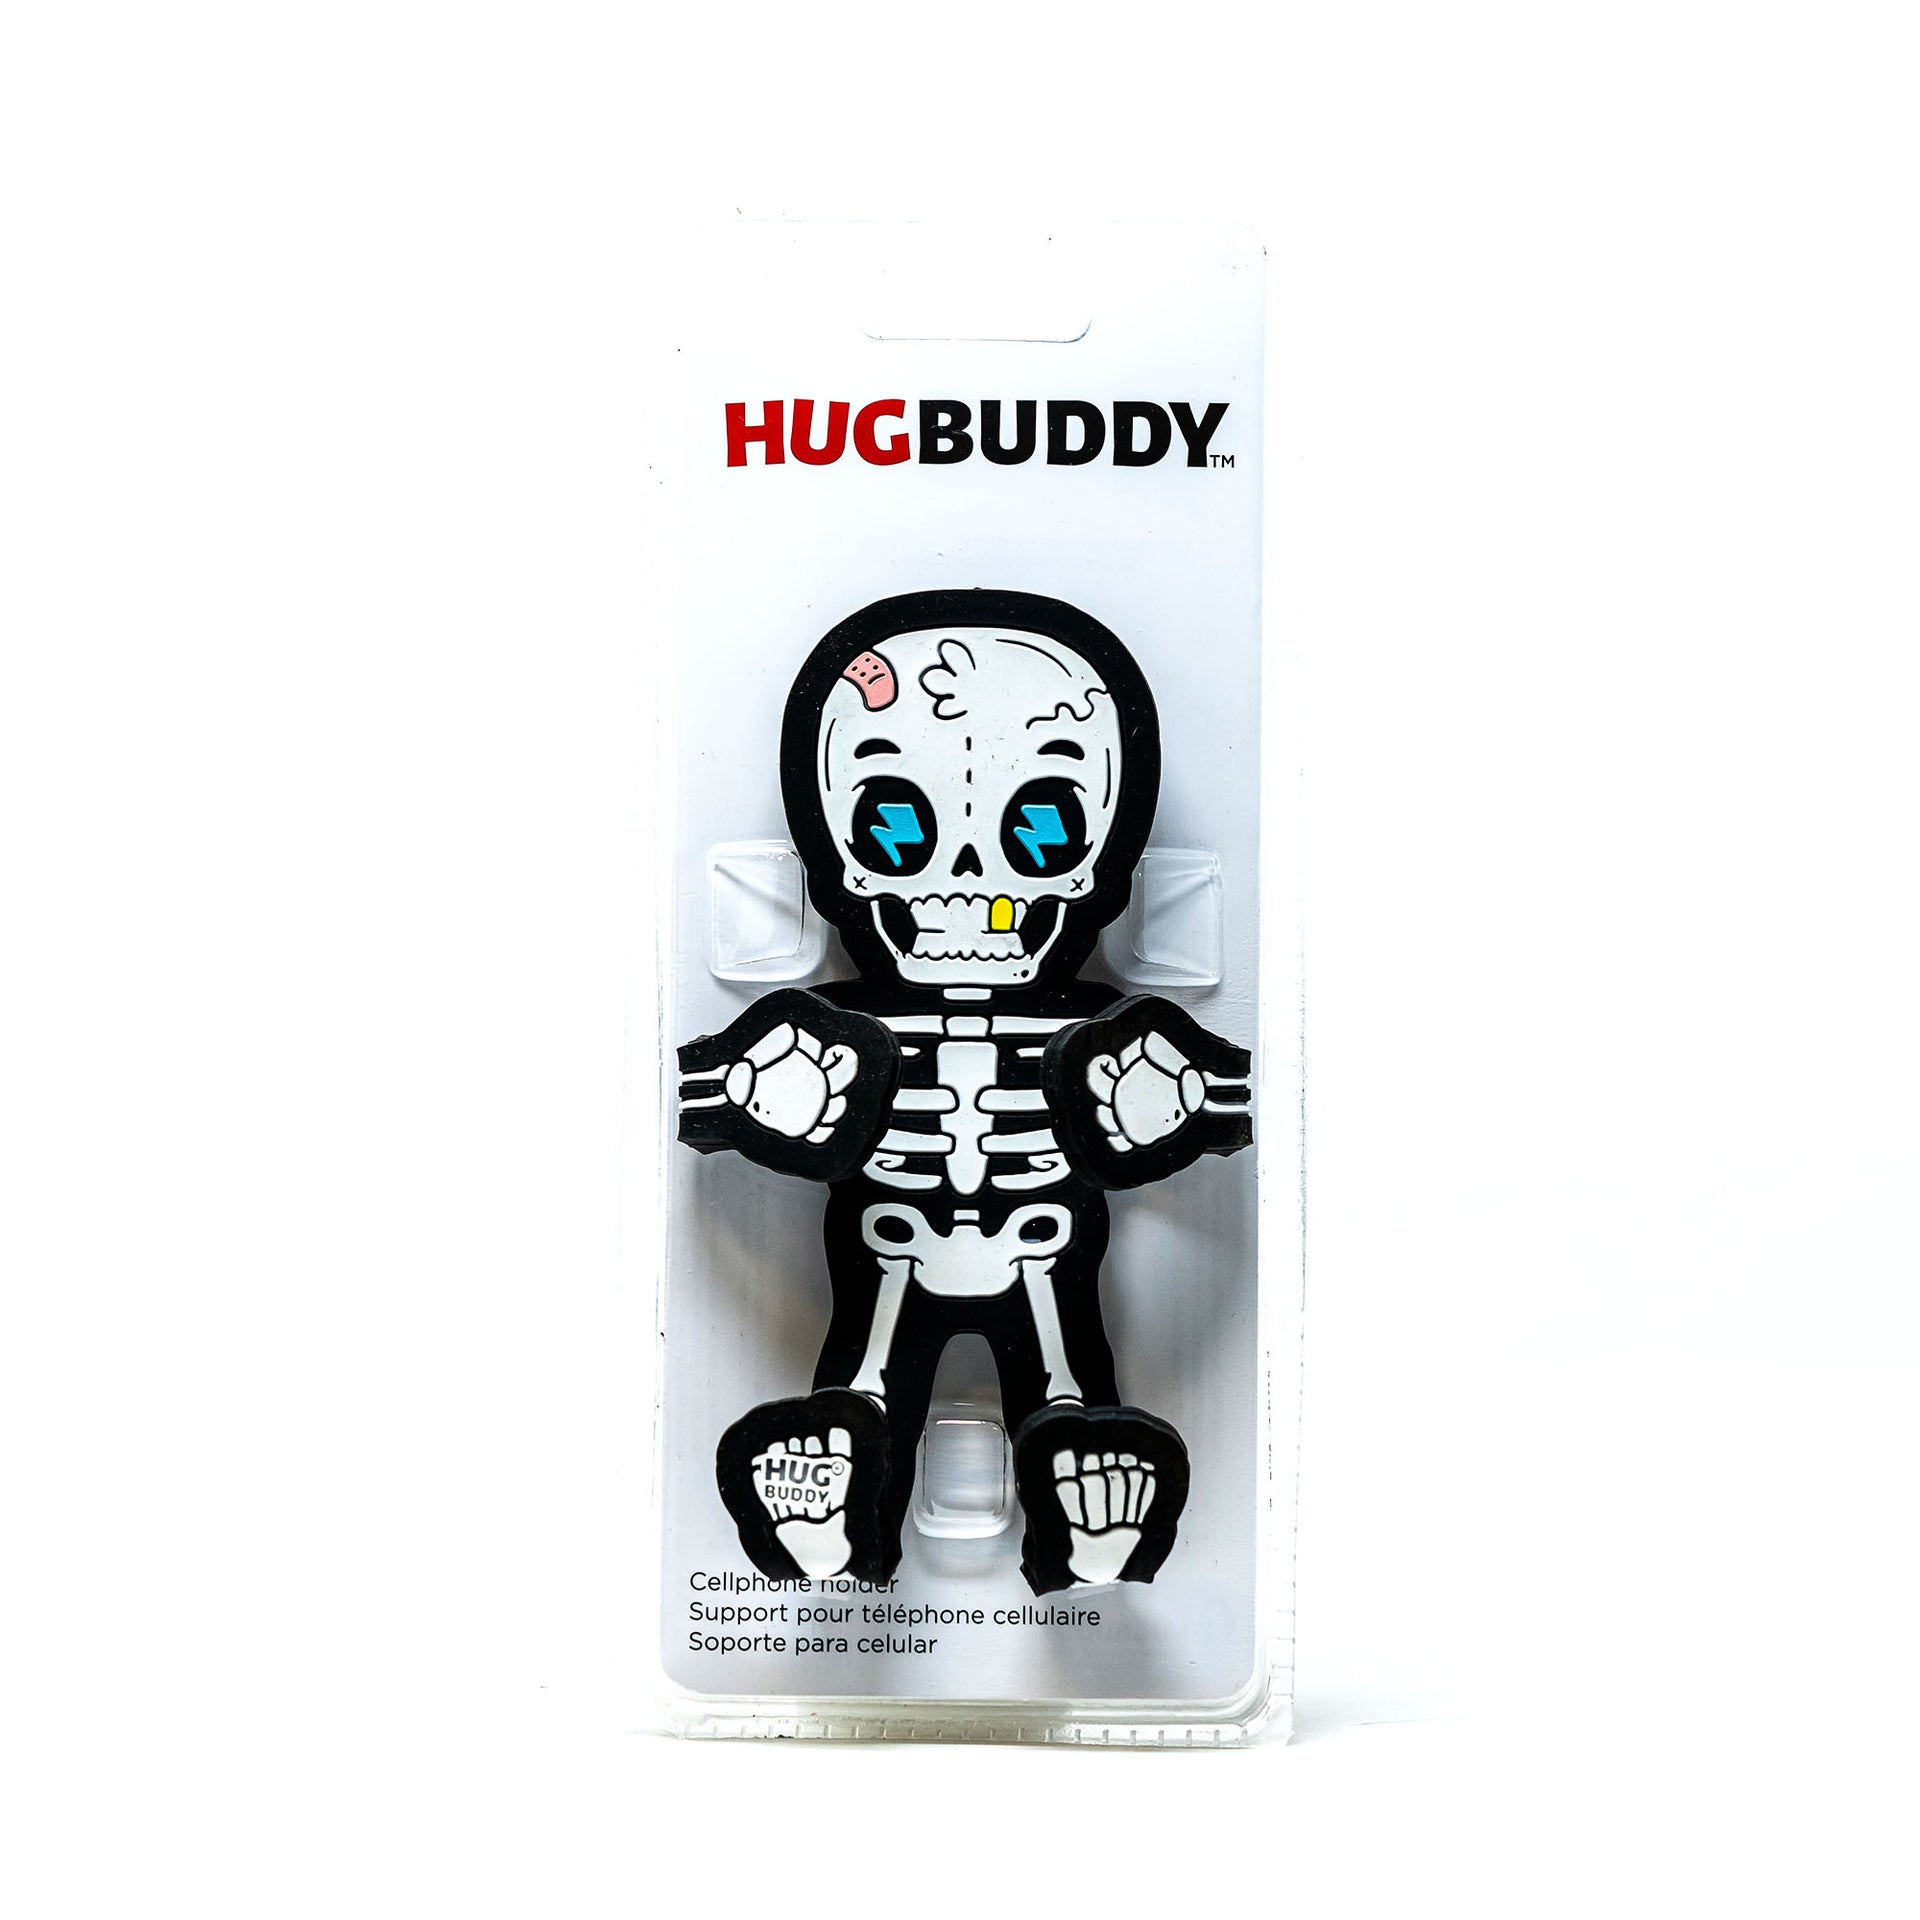 Image of Bones the Skeleton Hug Buddy packaging